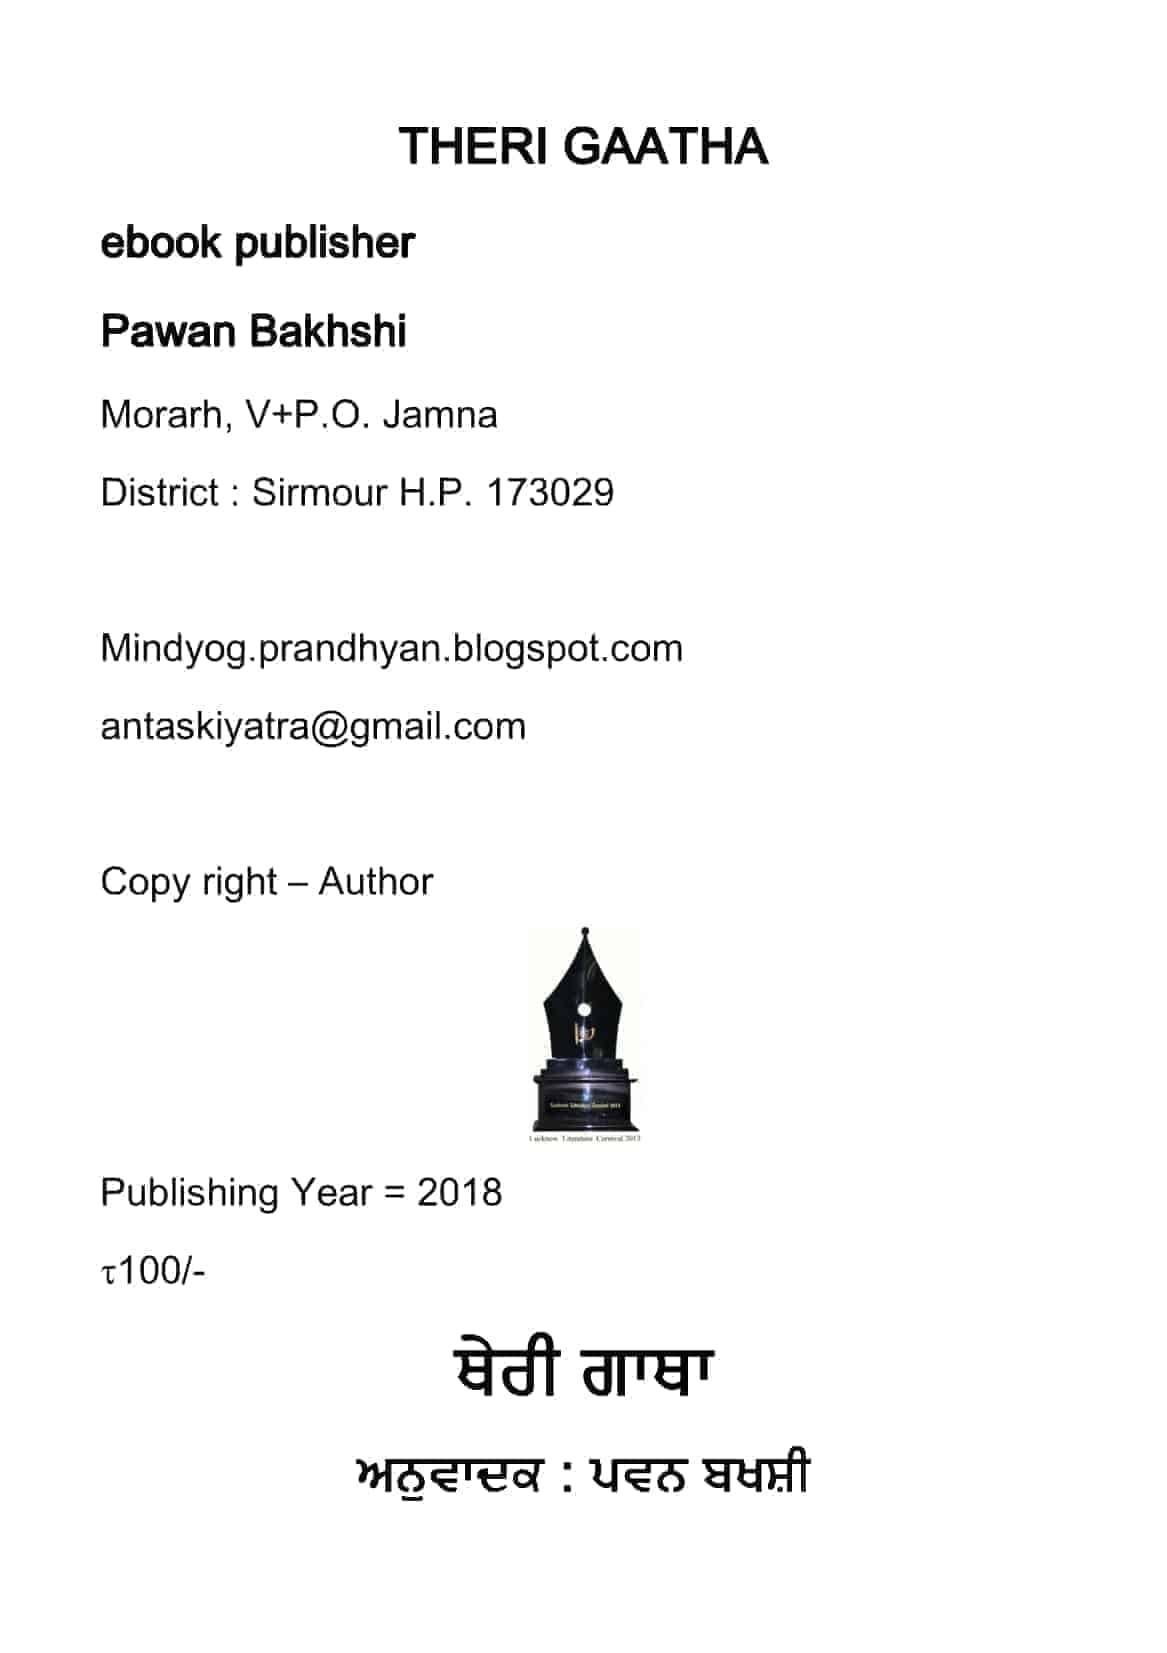 Theri Gaatha Punjabi- Pawan Bakhshi (Ebook)